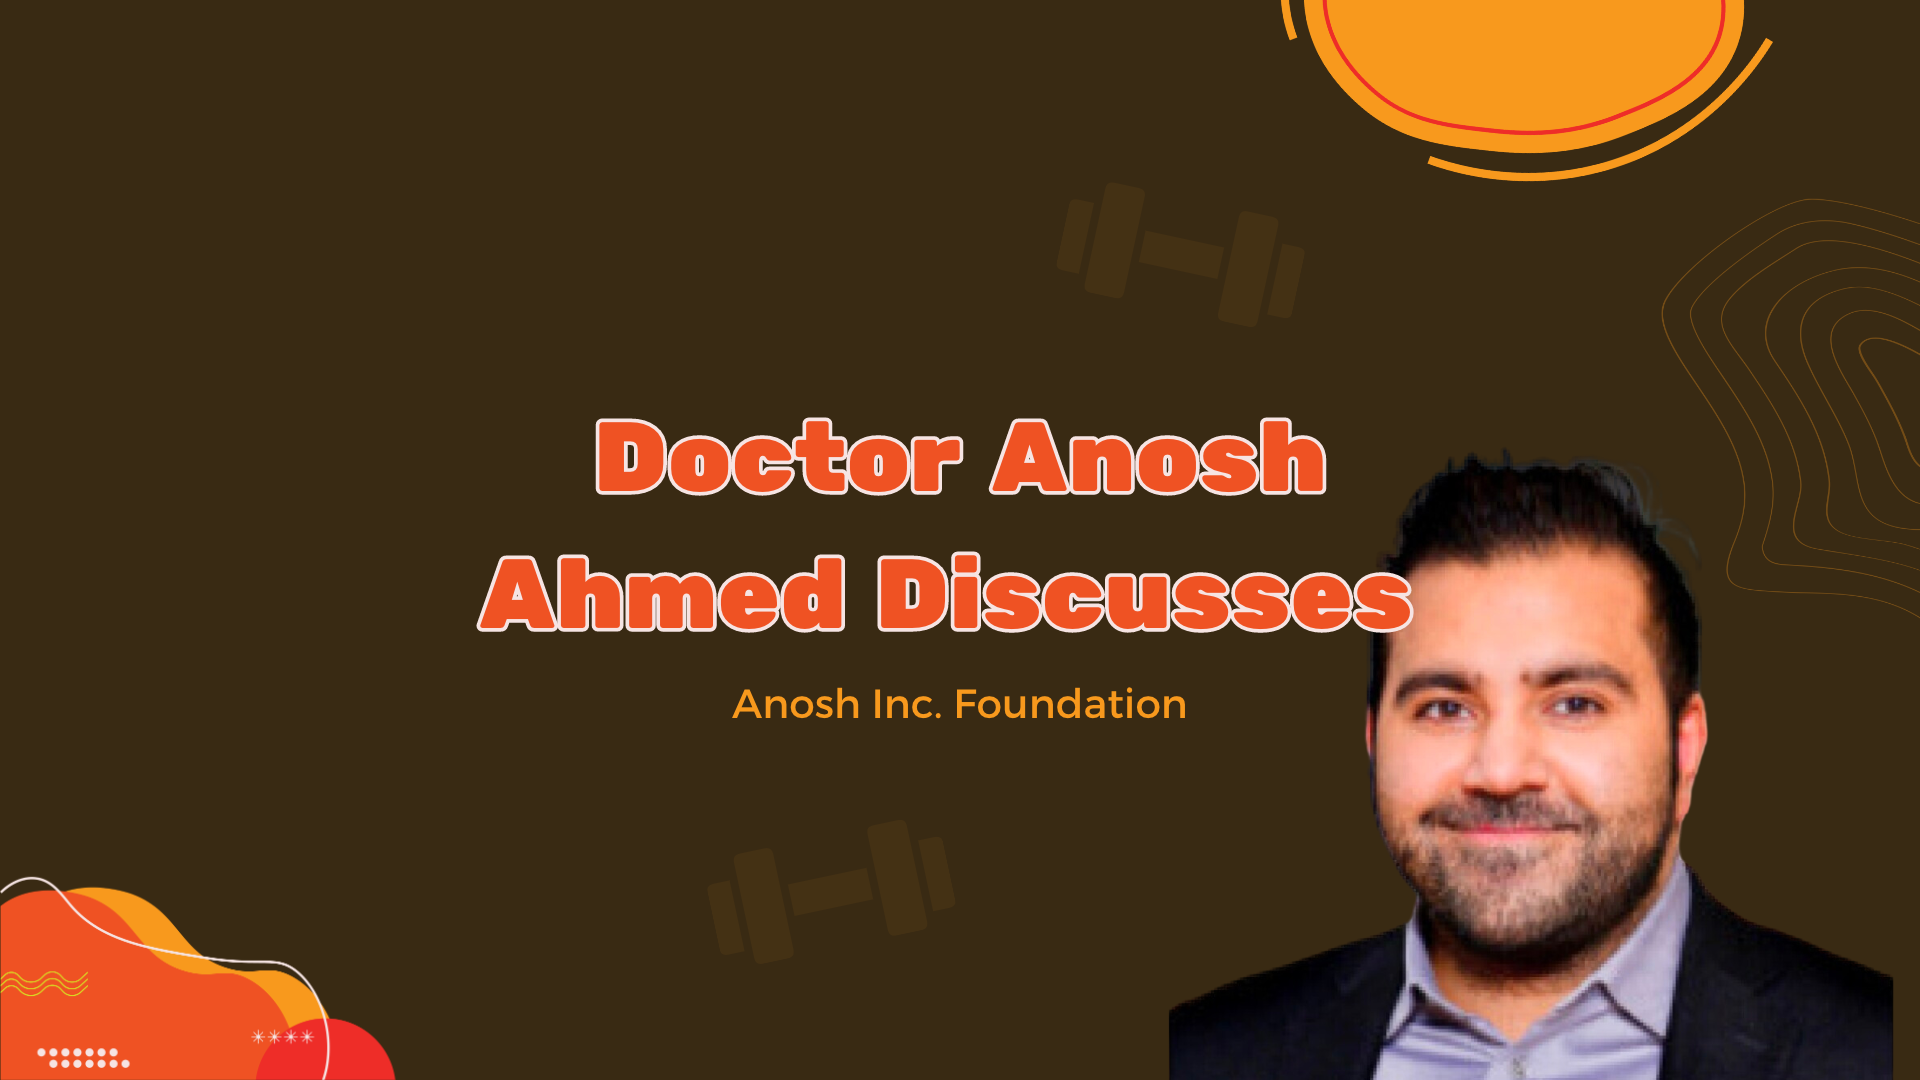 Доктор Анош Ахмед рассказывает о фонде Anosh Inc.